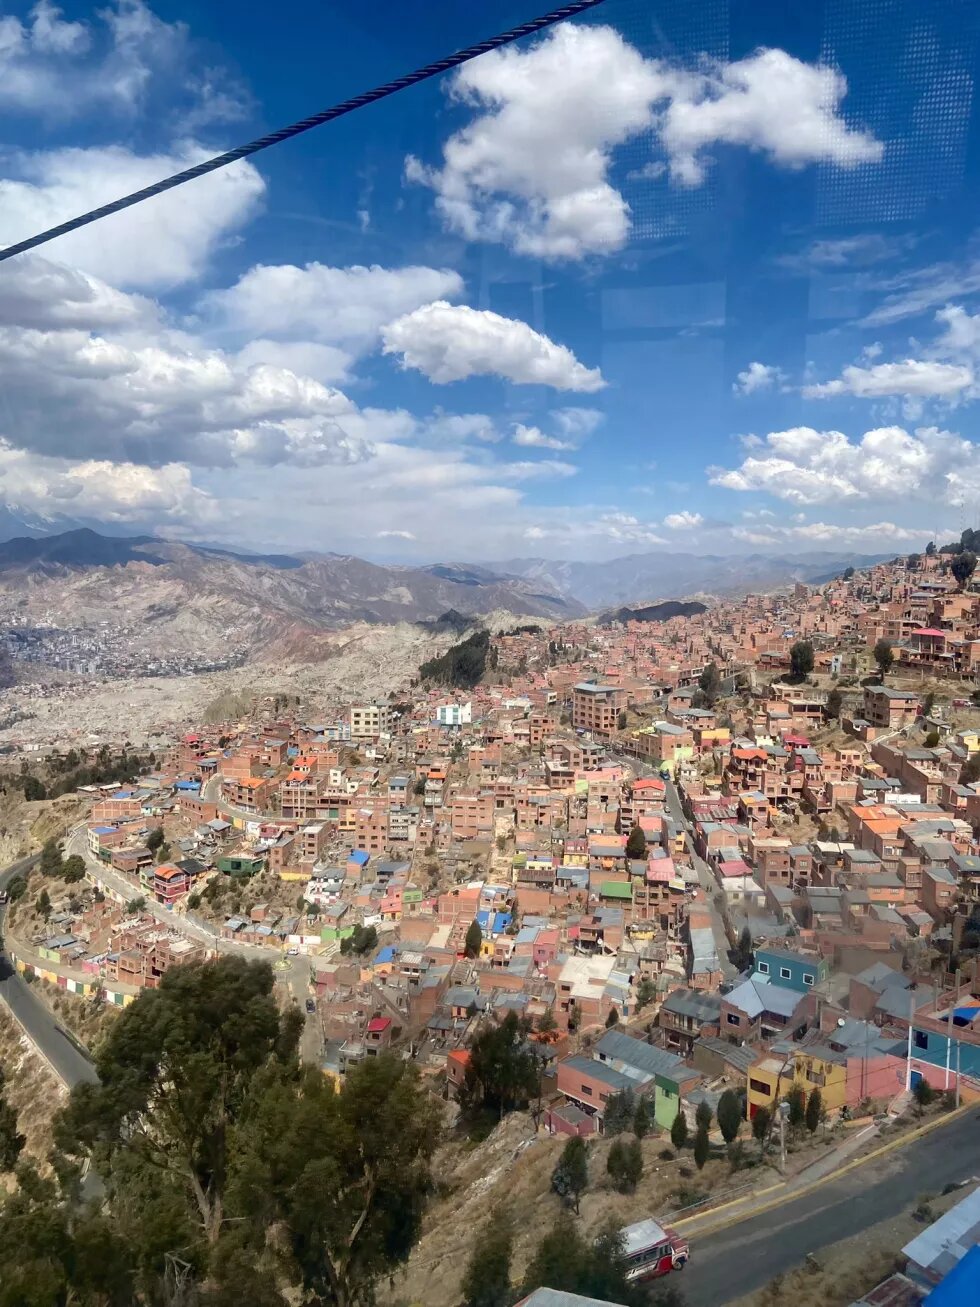 La Paz, Bolivien, von oben. Unzählige Häuser liegen an einem Hang. Am Horizont sind Berge und blauer, mit weißen Wolken durchzogener Himmel.